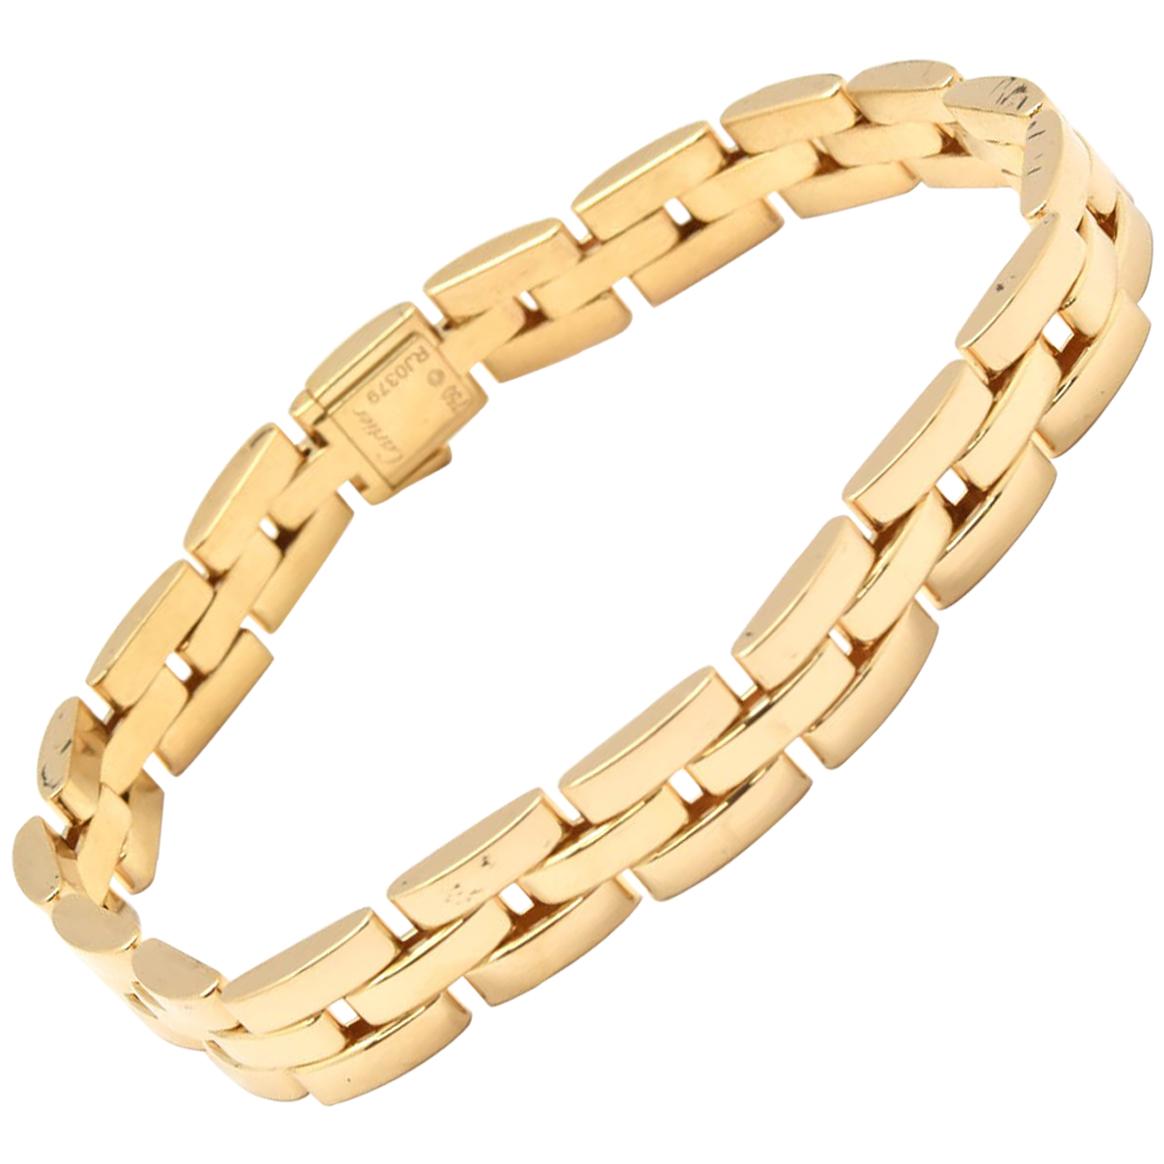 Cartier Maillon Panthere 18 Karat Yellow Gold Three-Row Link Bracelet